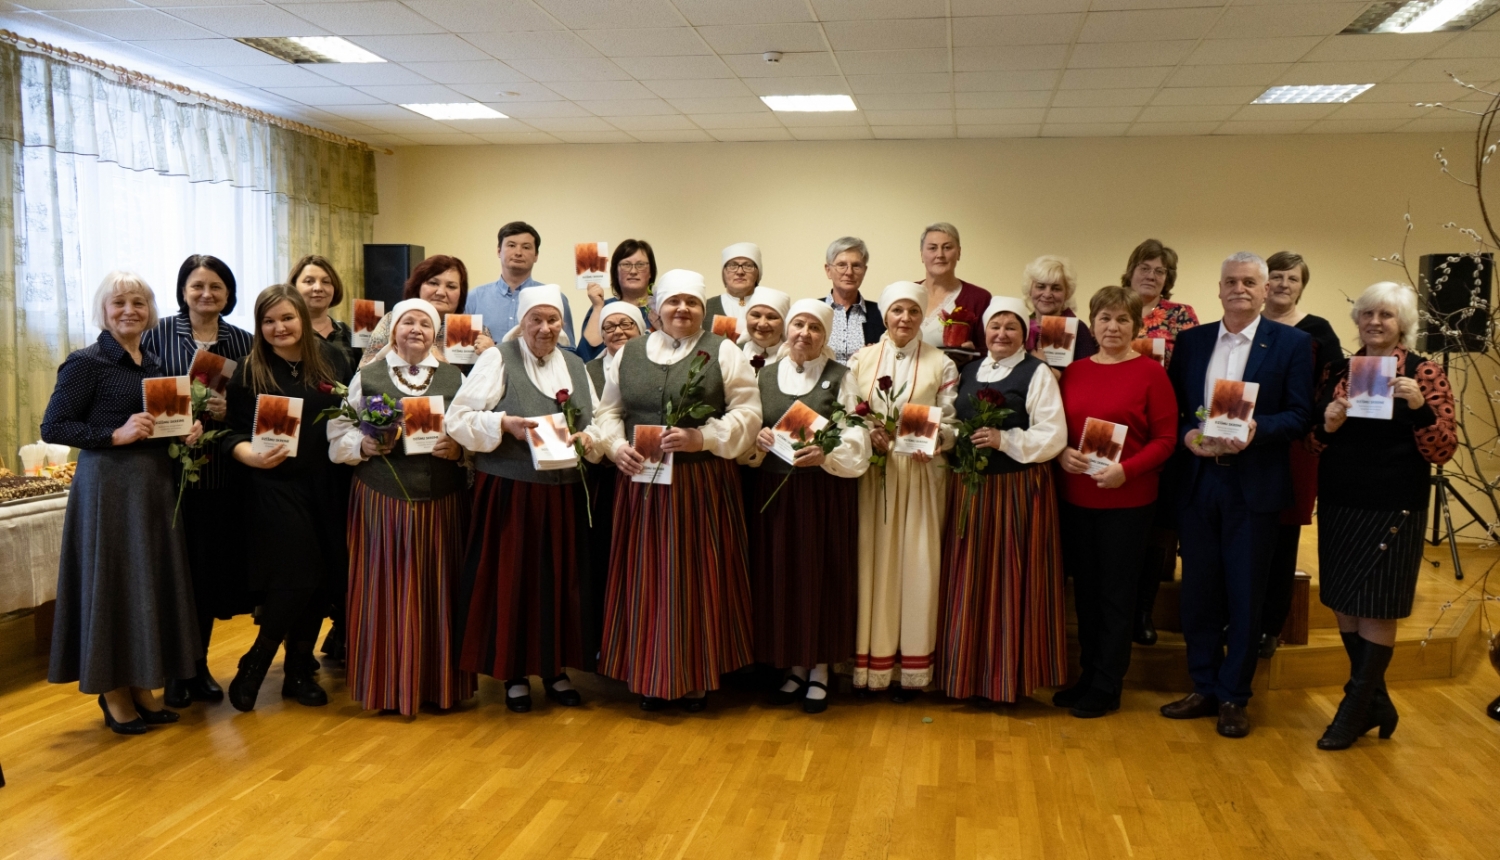 Skanīgi nosvinēti Baltinavas etnogrāfiskā ansambļa dziesmu krājuma “Dzīšmu skreine” atvēršanas svētki